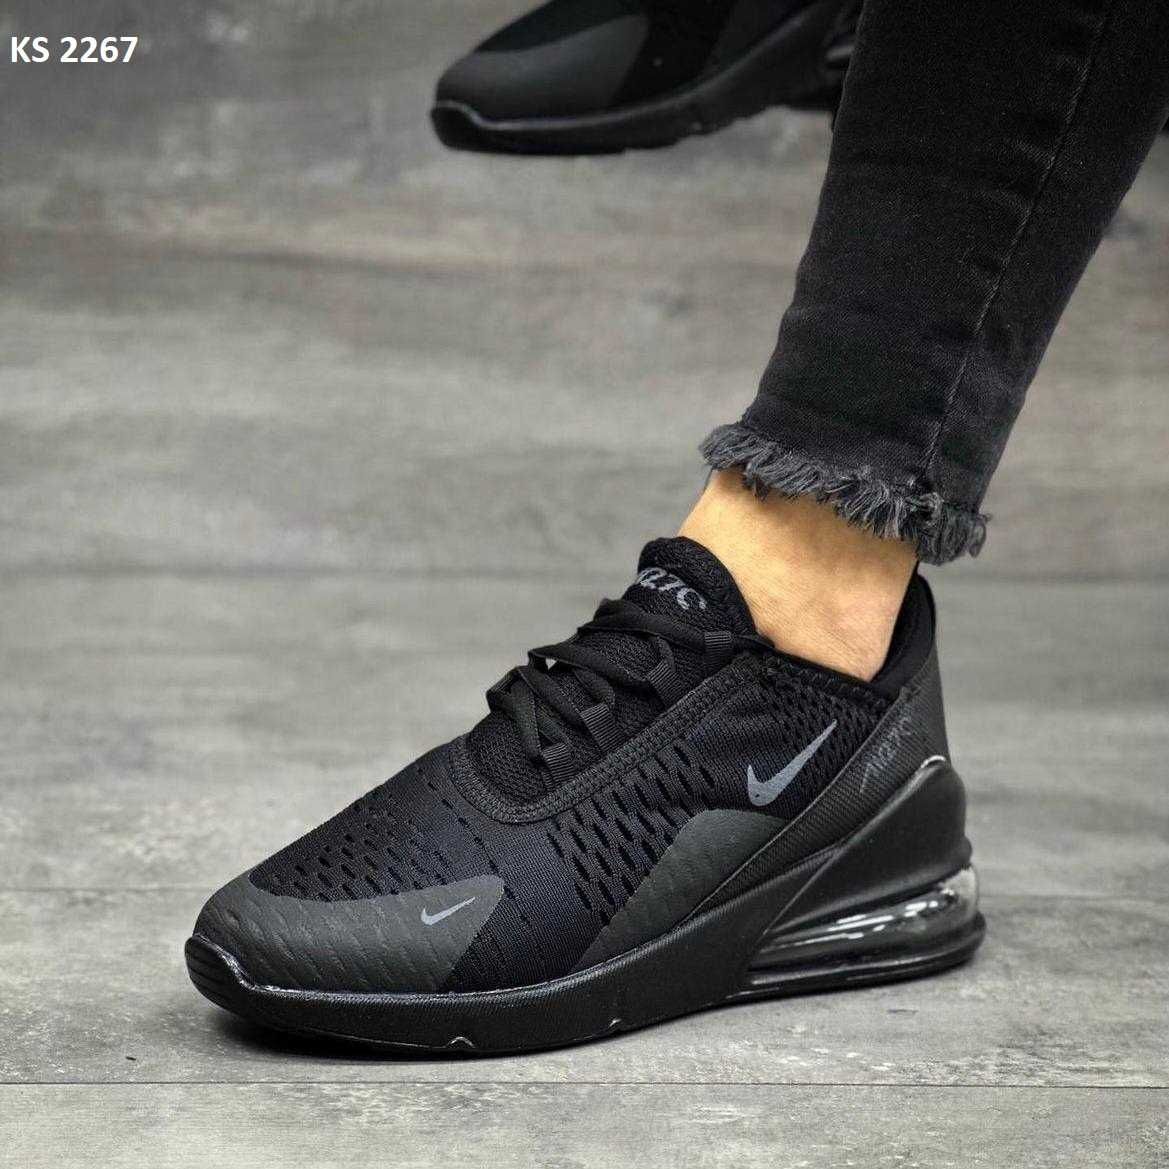 Чоловічі кросівки/взуття Nike Air Max 270! Артикул: KS 2267